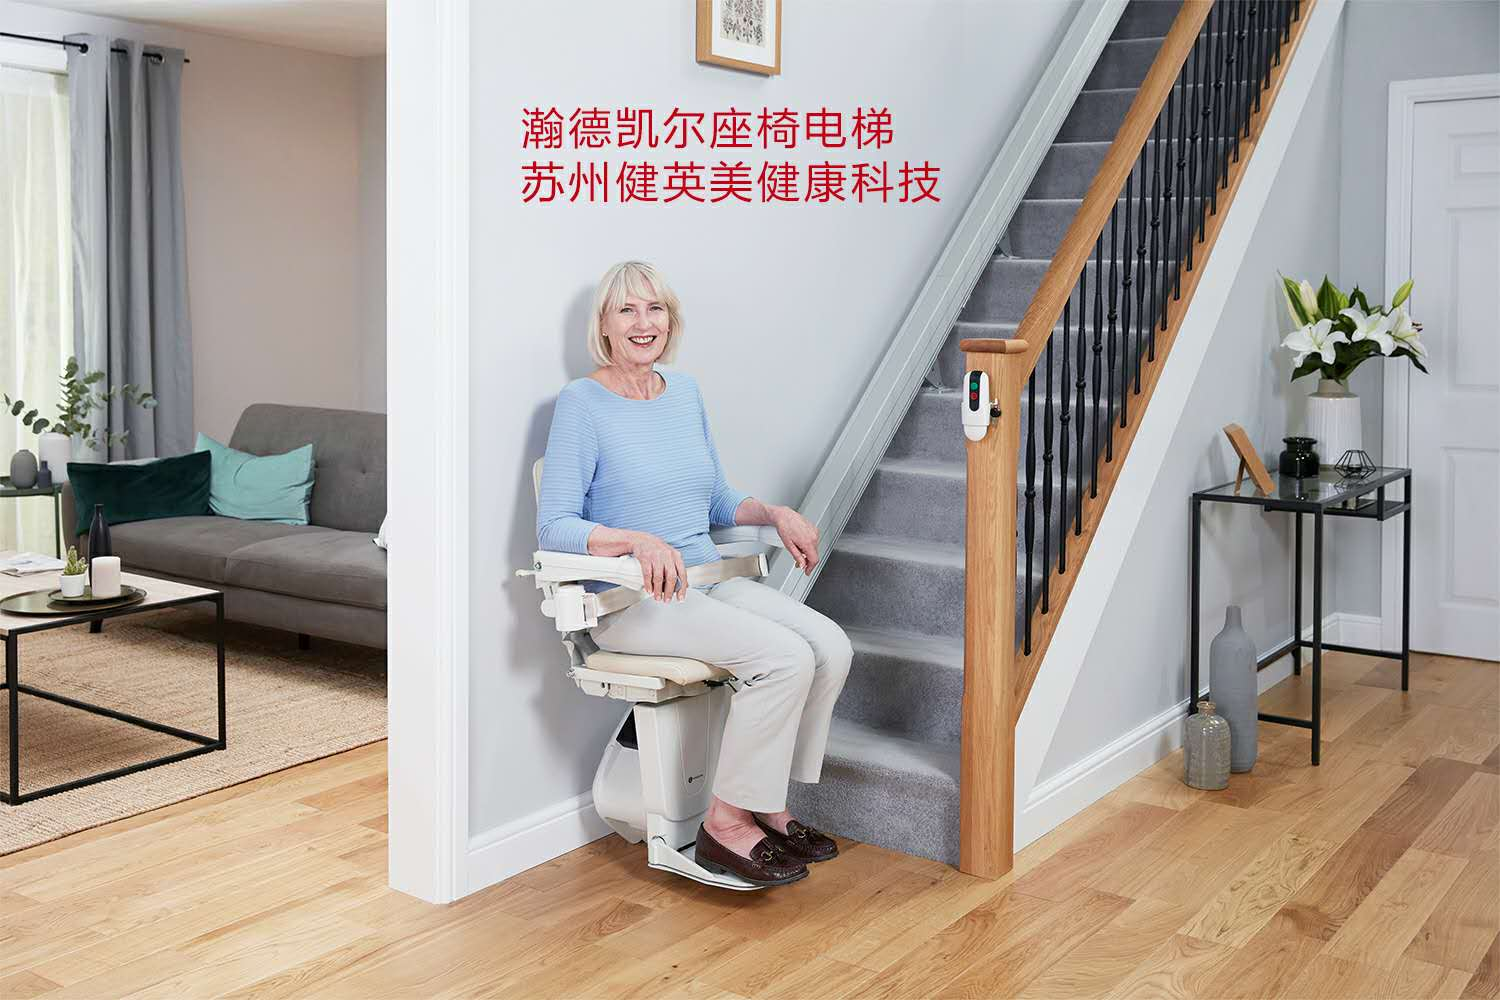 家用坐椅式电梯 - 2020年最新商品信息聚合专区 - 爱